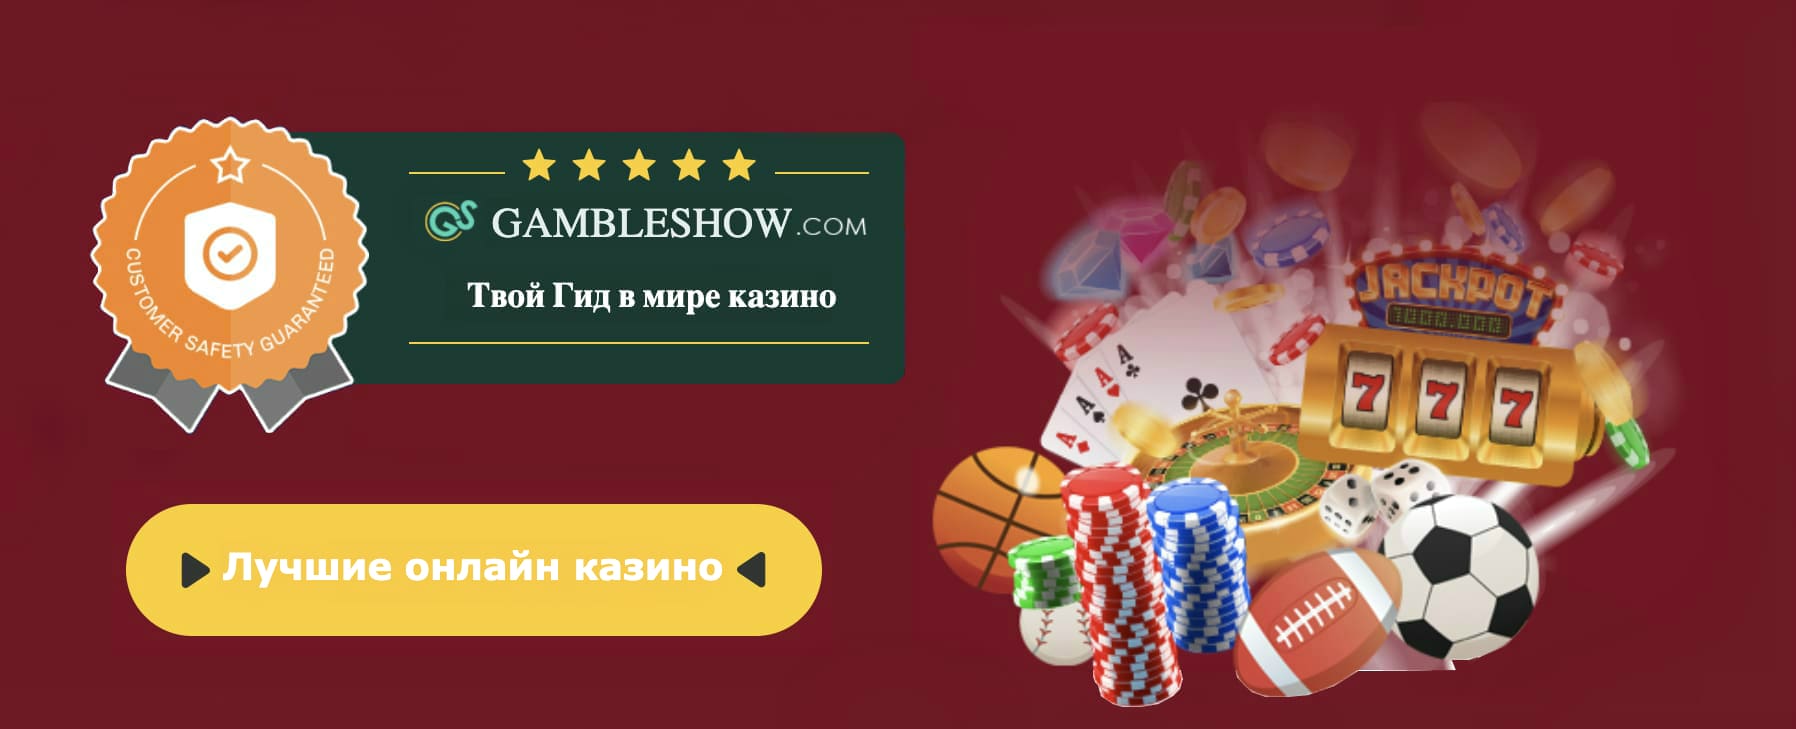 Free casino slot machines